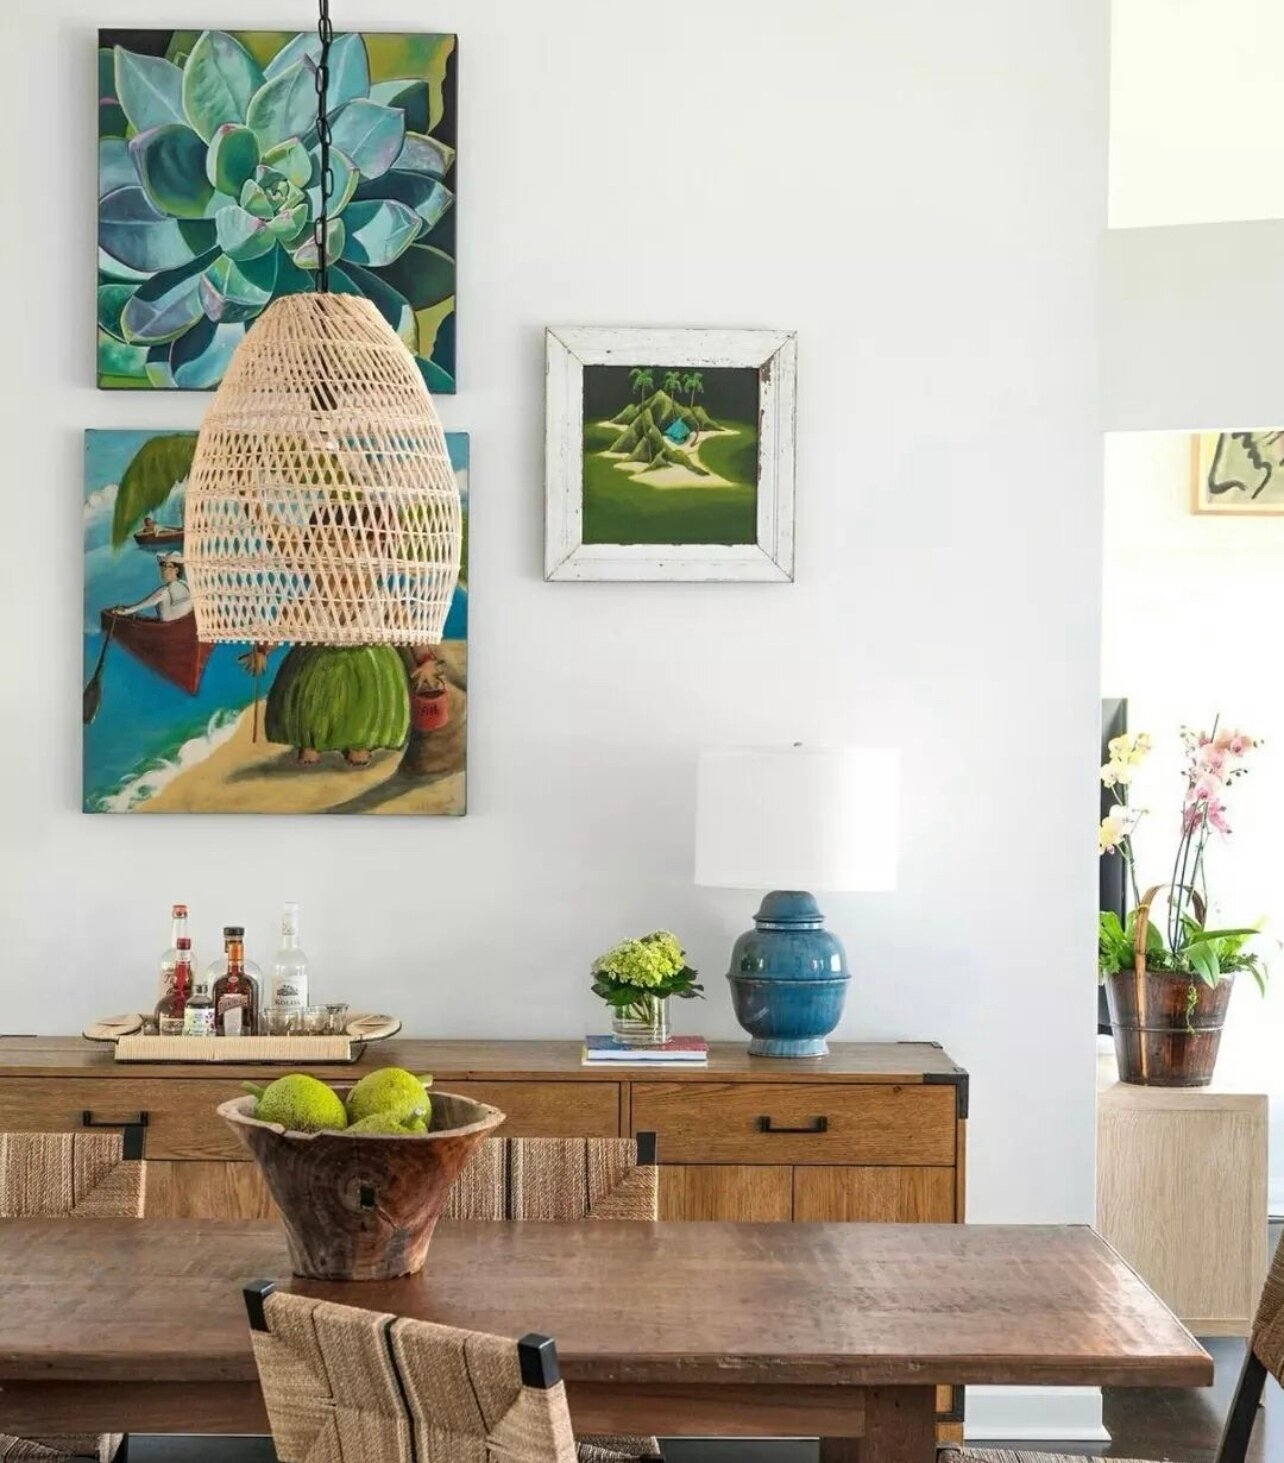 Feeling tropical with @jamieyoungco 🌴We love the Summer vibes. 

#denver #colorado #decor #decorinspo #decorinspiration #furnituredesign #furnituredesigner #showroom #design #designshowroom #denverdesign #denverdesigndistrict #moderndesign #modernin